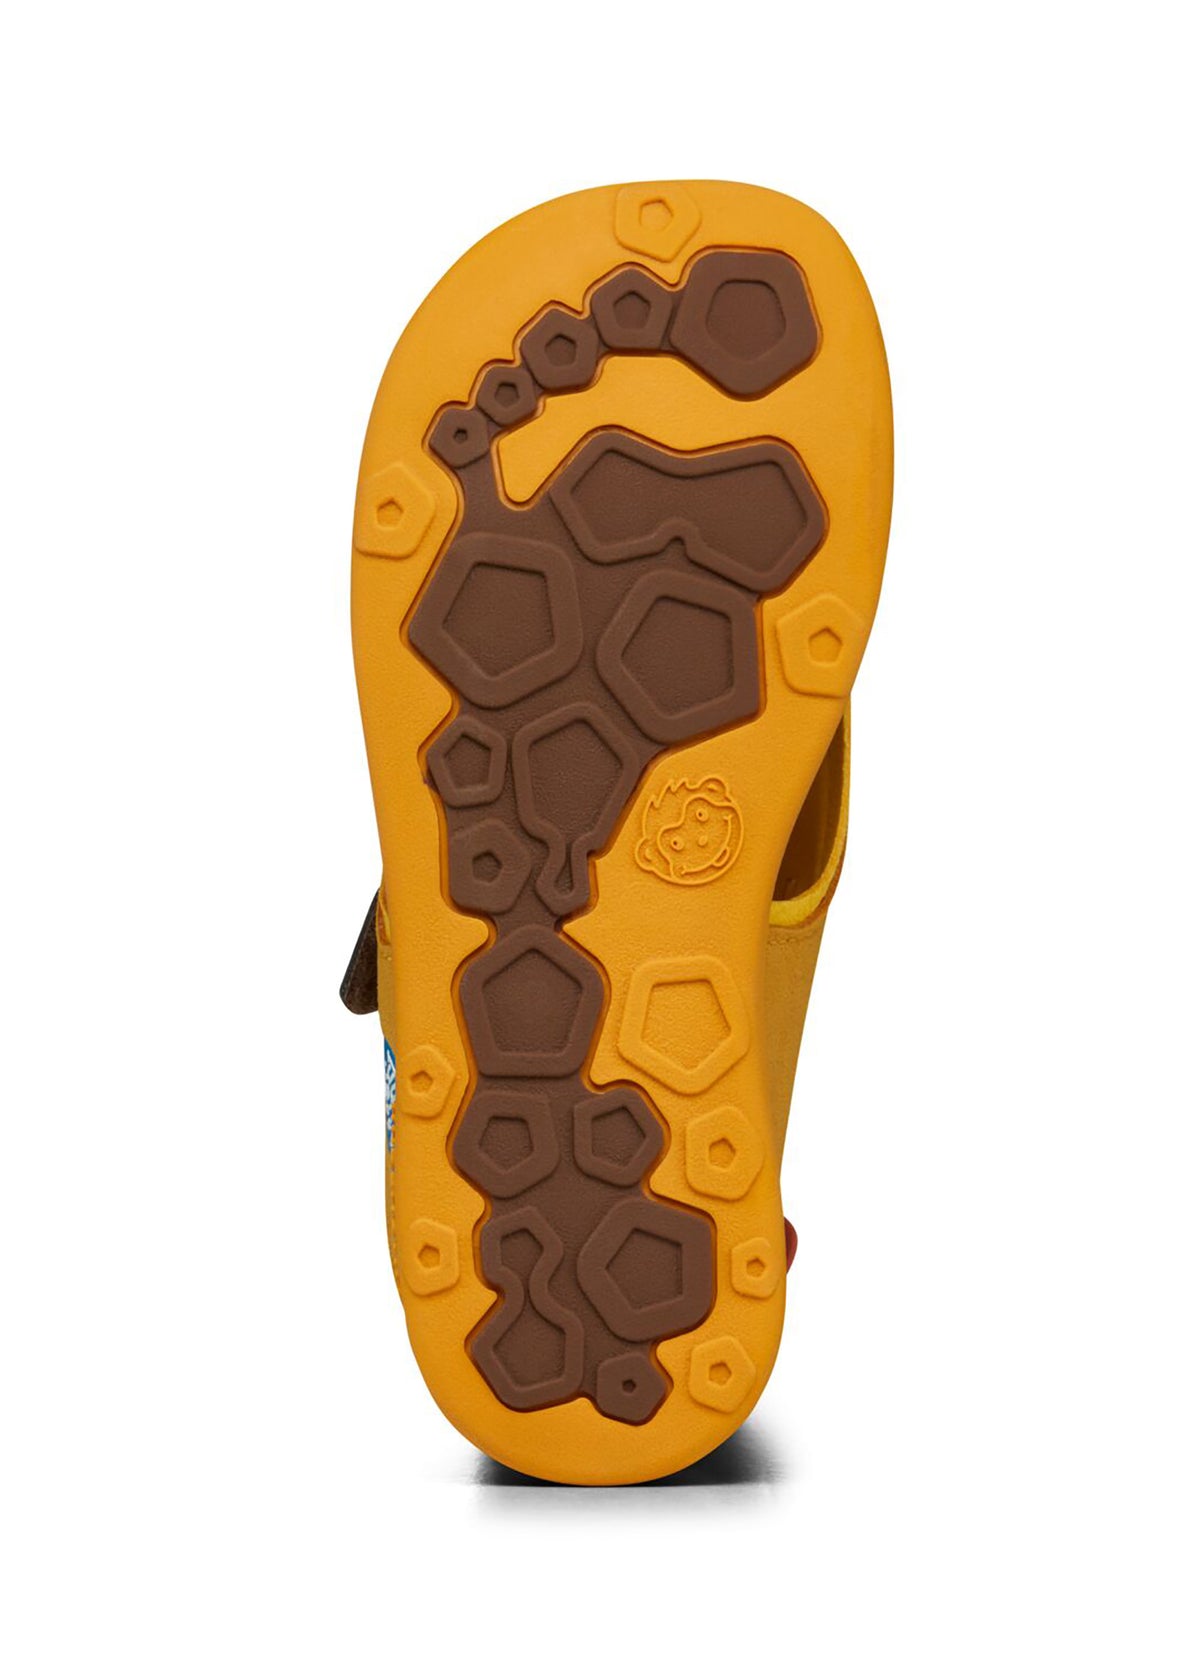 Lasten Tiger-paljasjalkasandaalit - Sandal Microfibre Airy, keltainen, ruskeat tarrat, vegaaninen